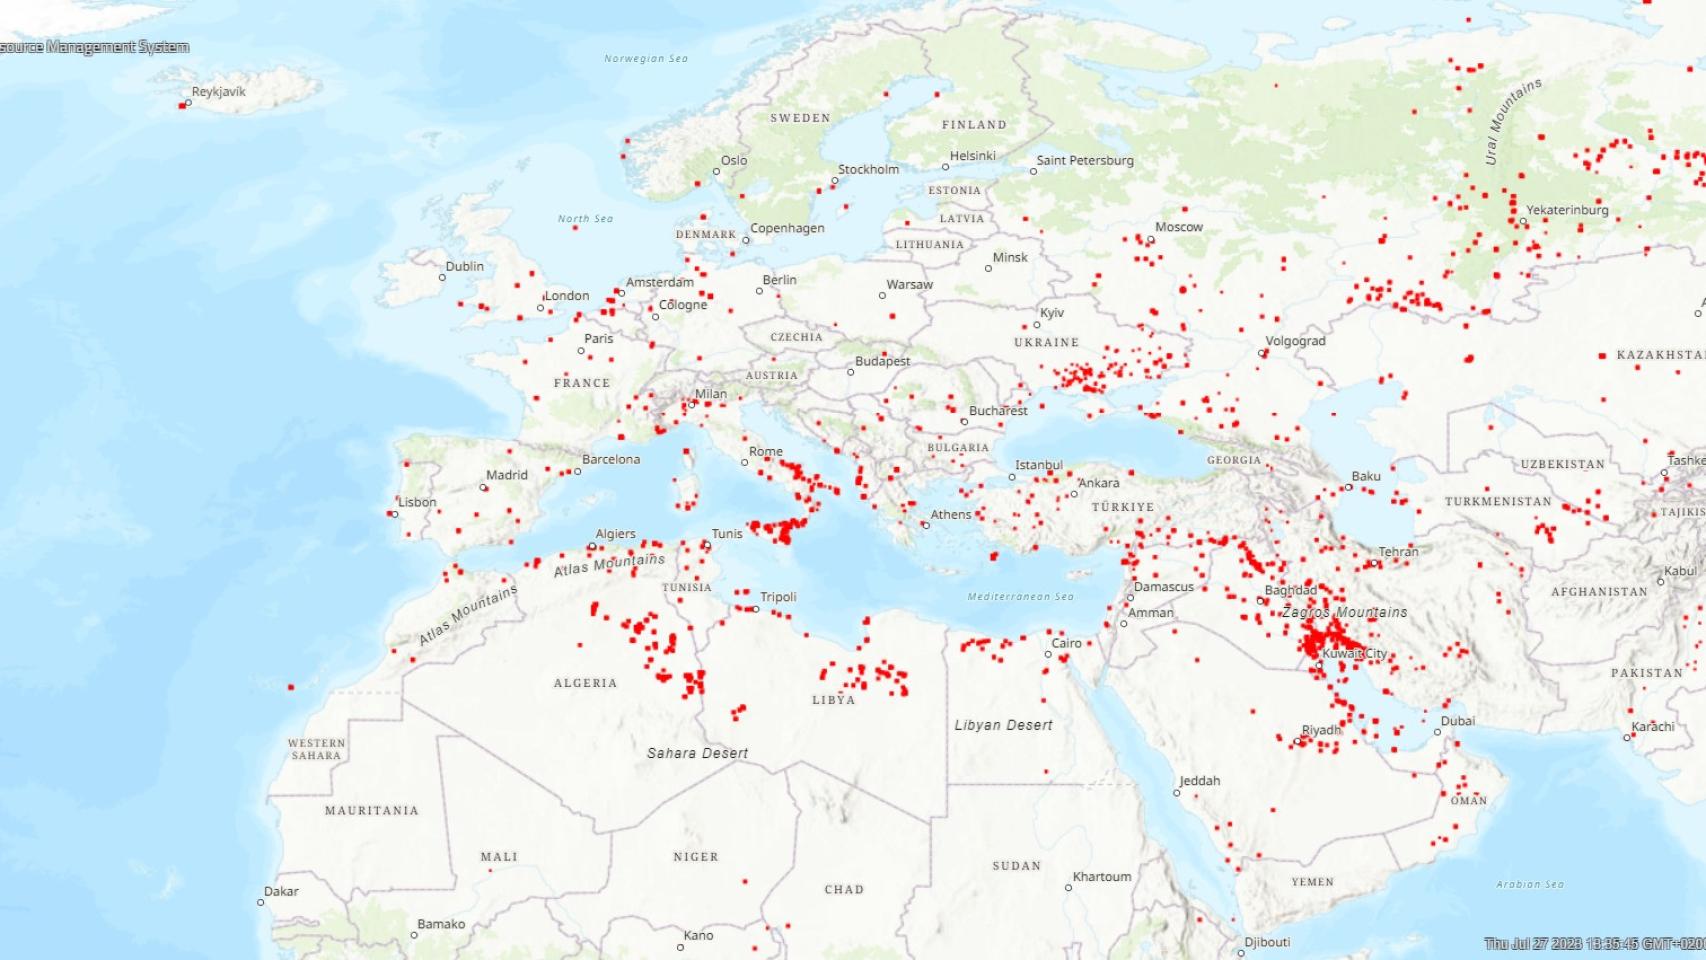 Imagen de los incendios activos en Europa y el Mediterráneo, tomada del Fire Information for Resource Management System (FIRMS) de la NASA